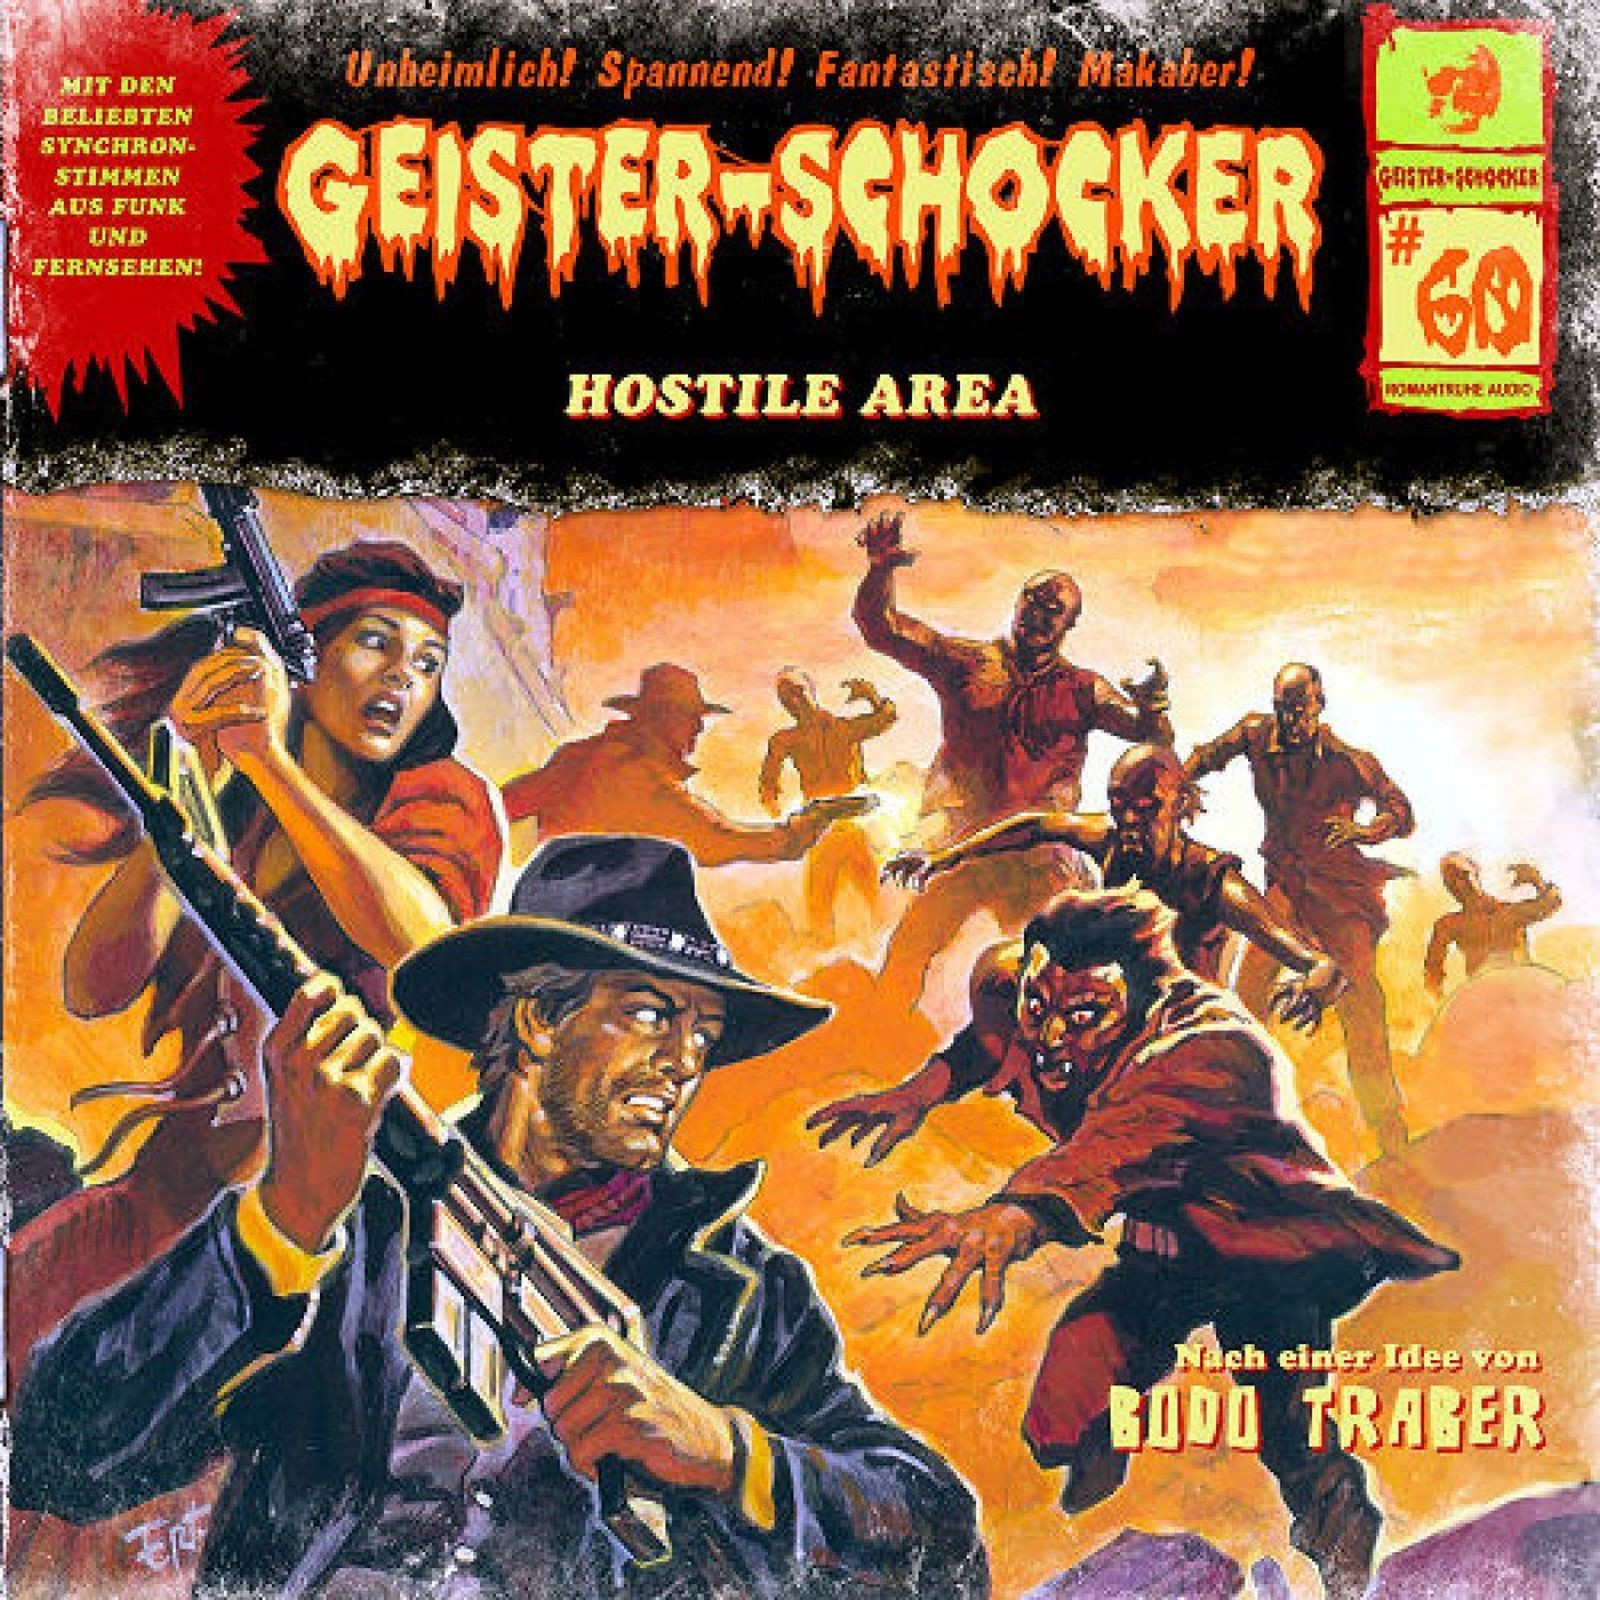 Geister-Schocker 60 Hostile Area